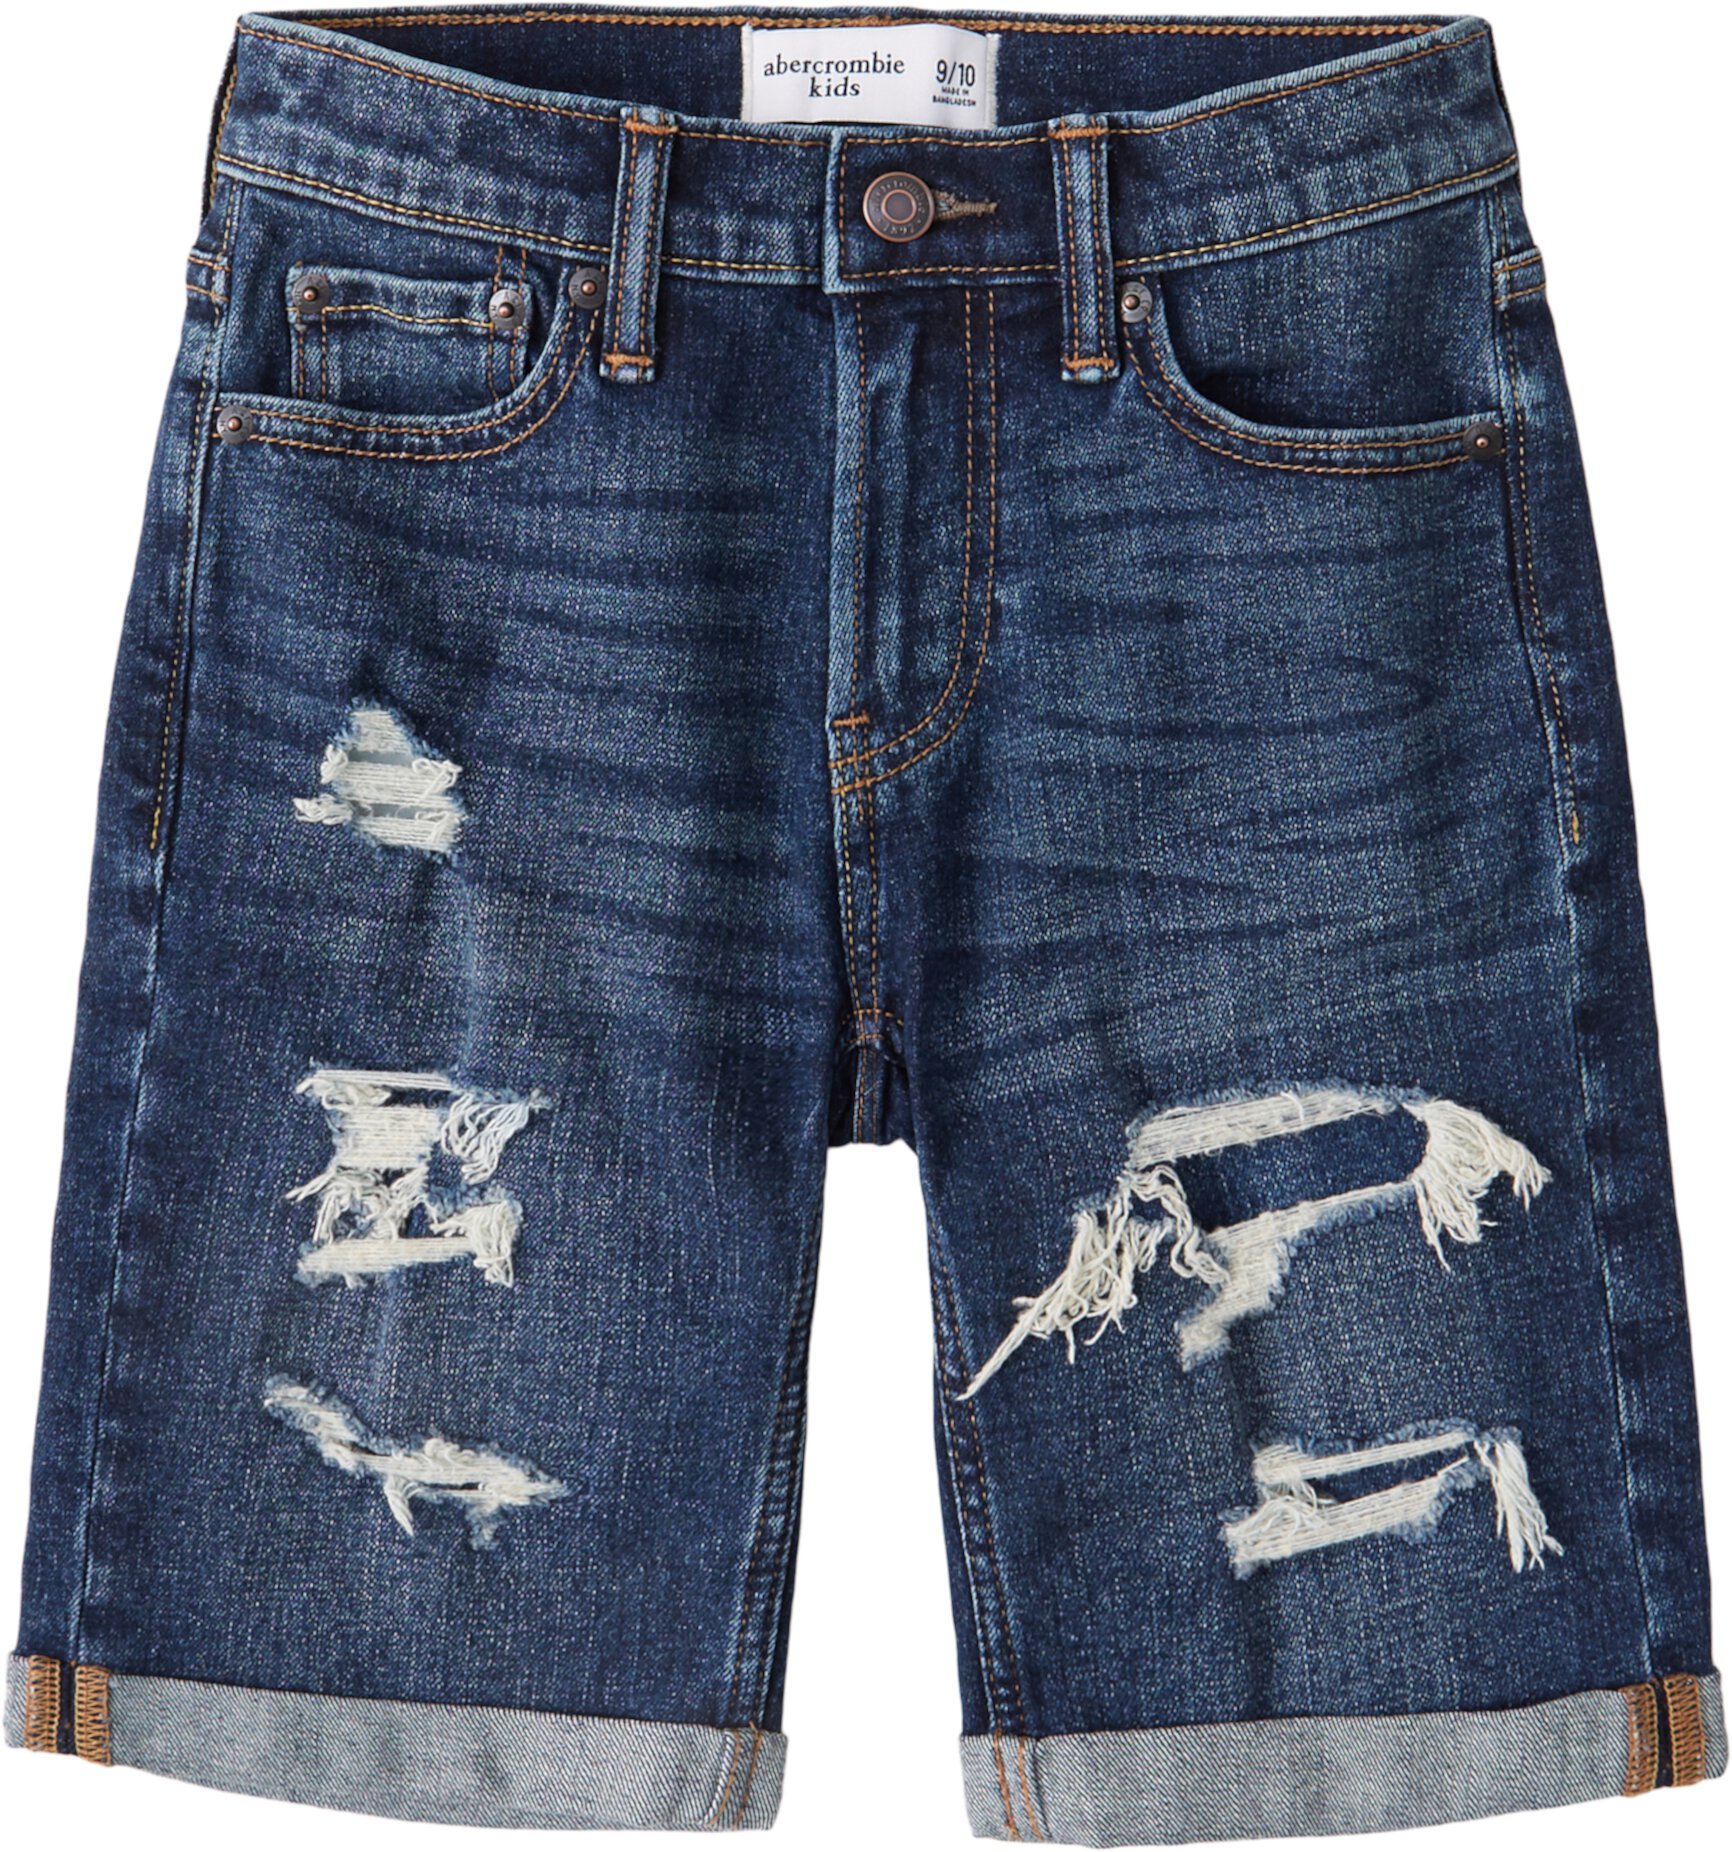 Джинсовые шорты Rolled Destroy (для детей младшего и школьного возраста) Abercrombie kids